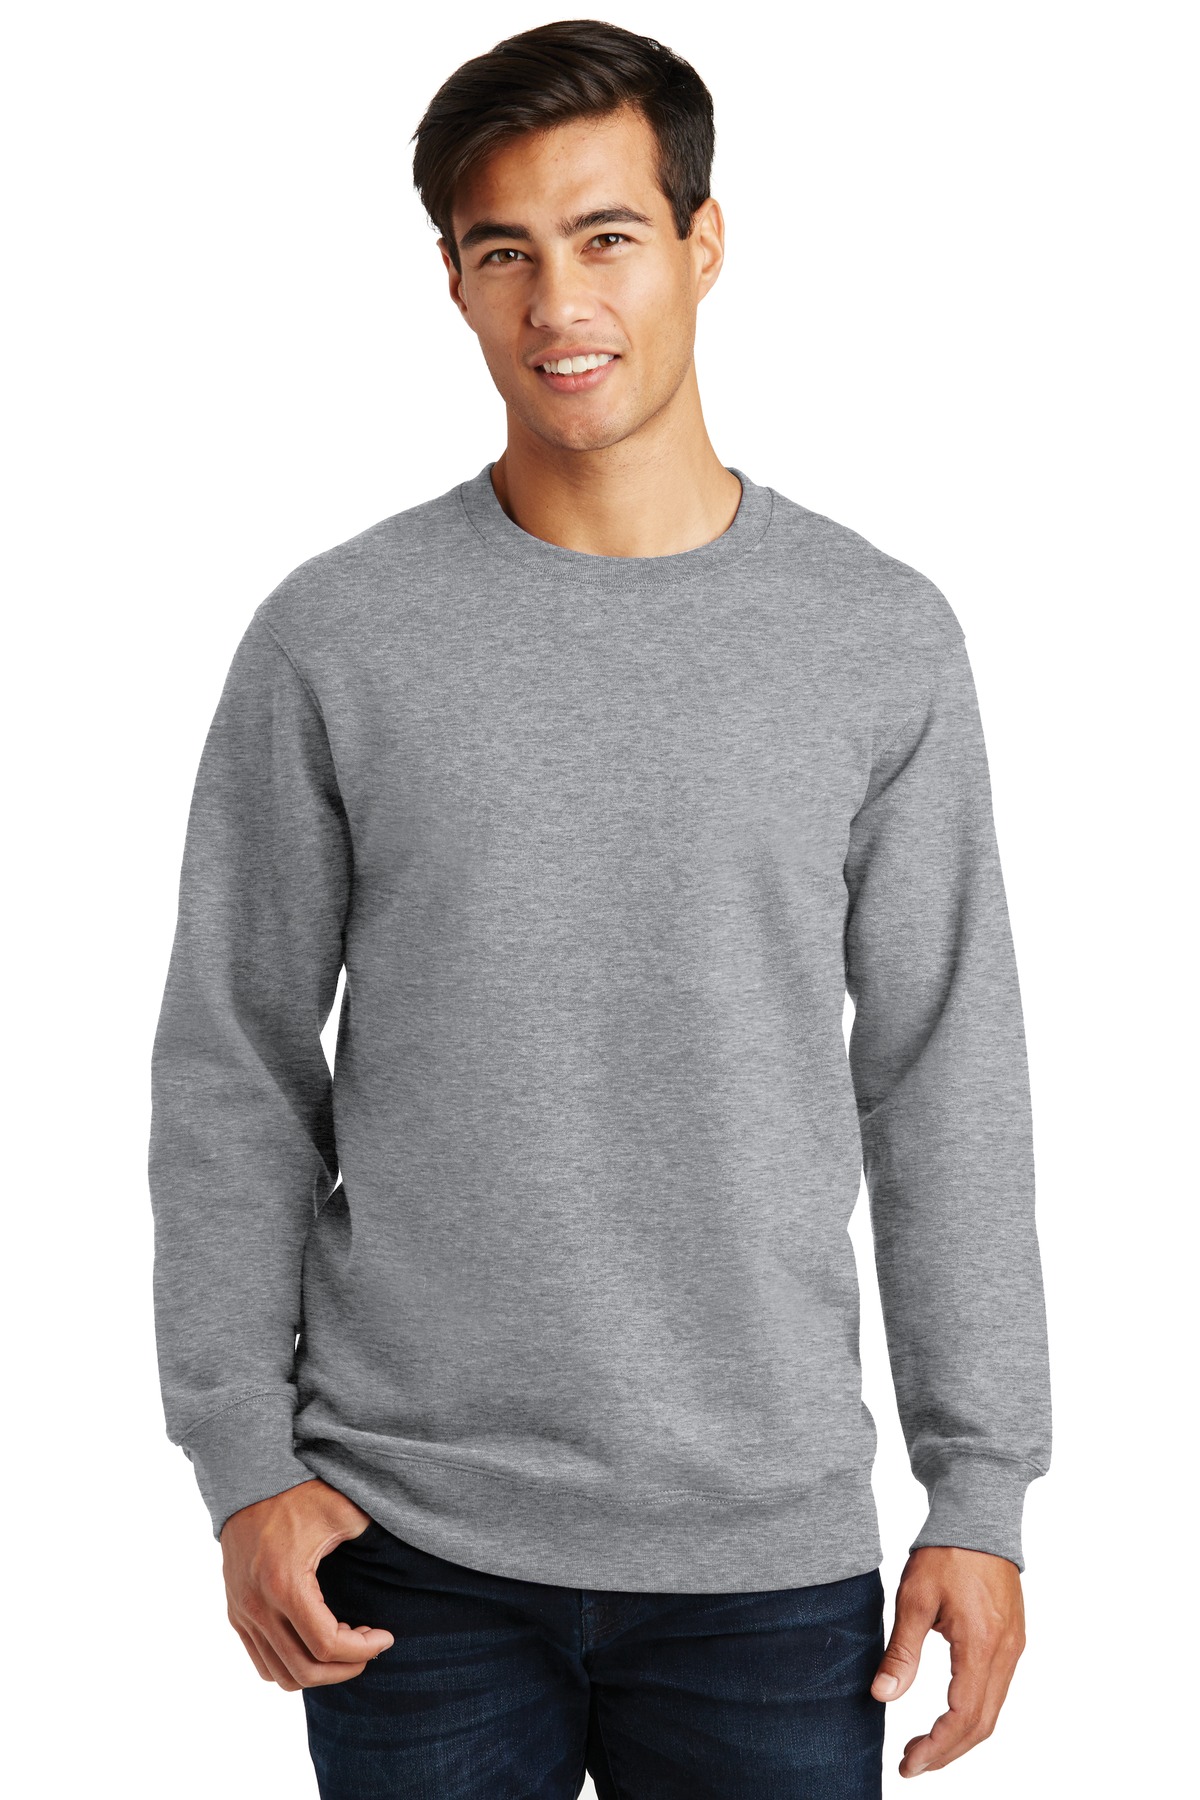 Port & Company Fan Favorite Fleece Crewneck Sweatshirt - PC850